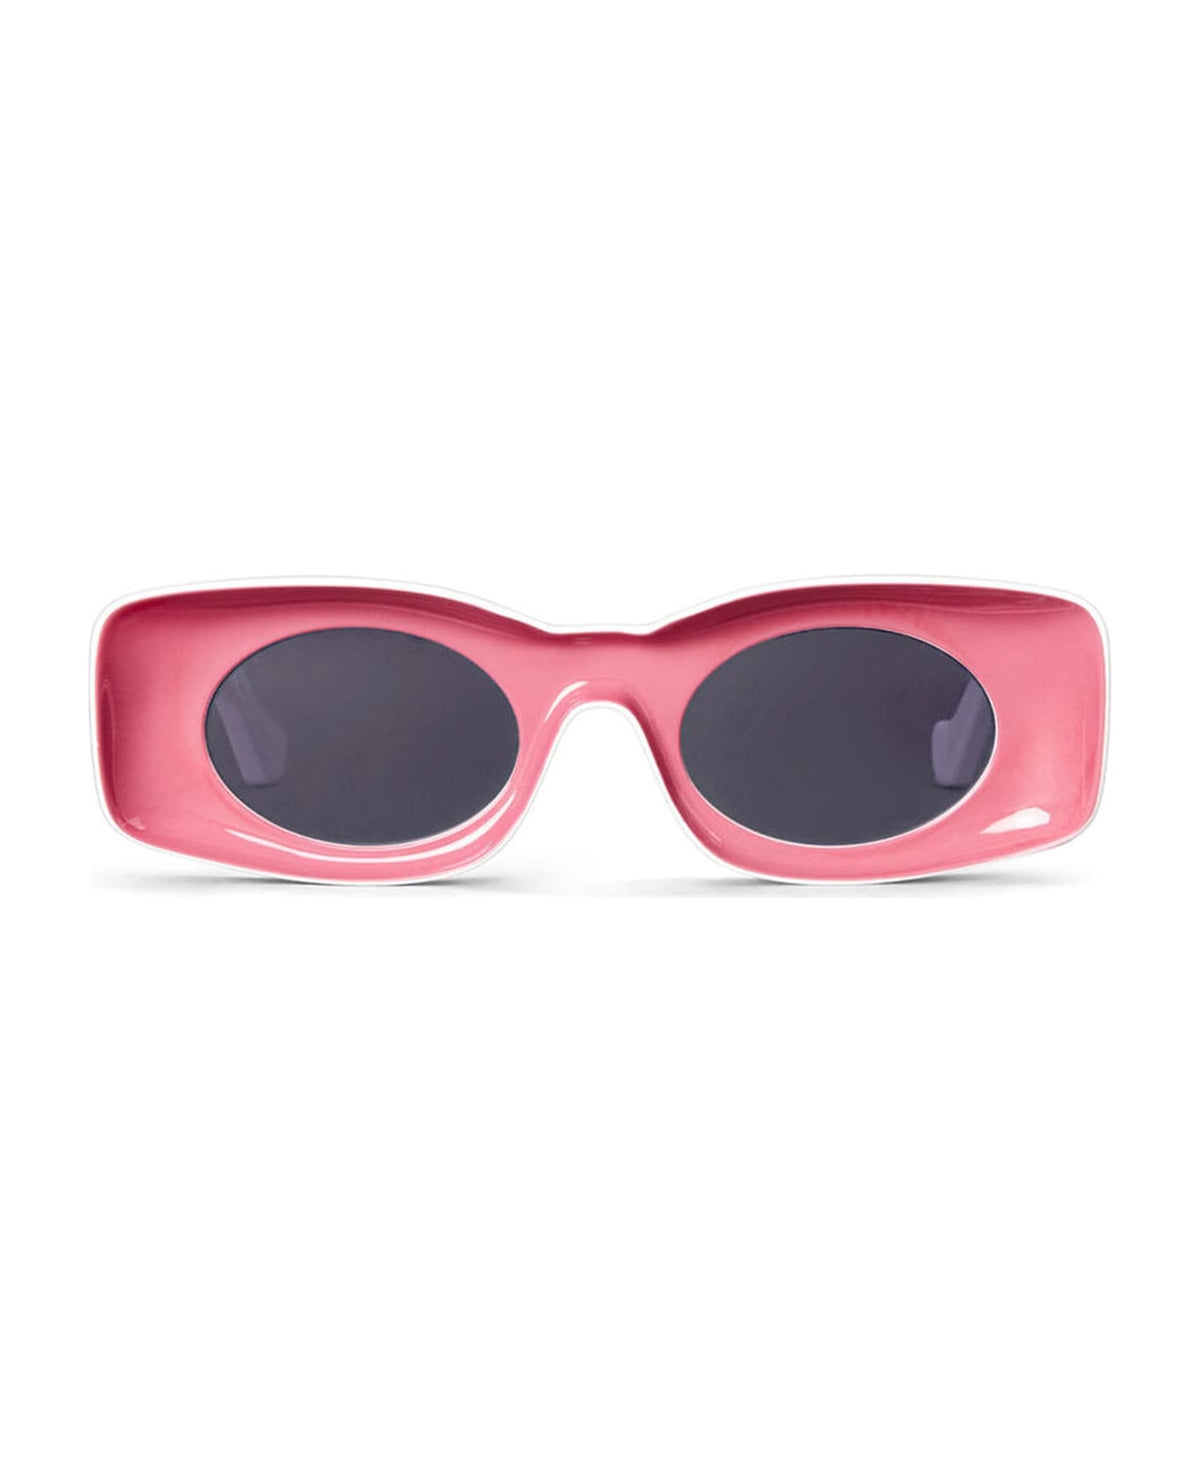 Lw40033i - Coral Pink Sunglasses